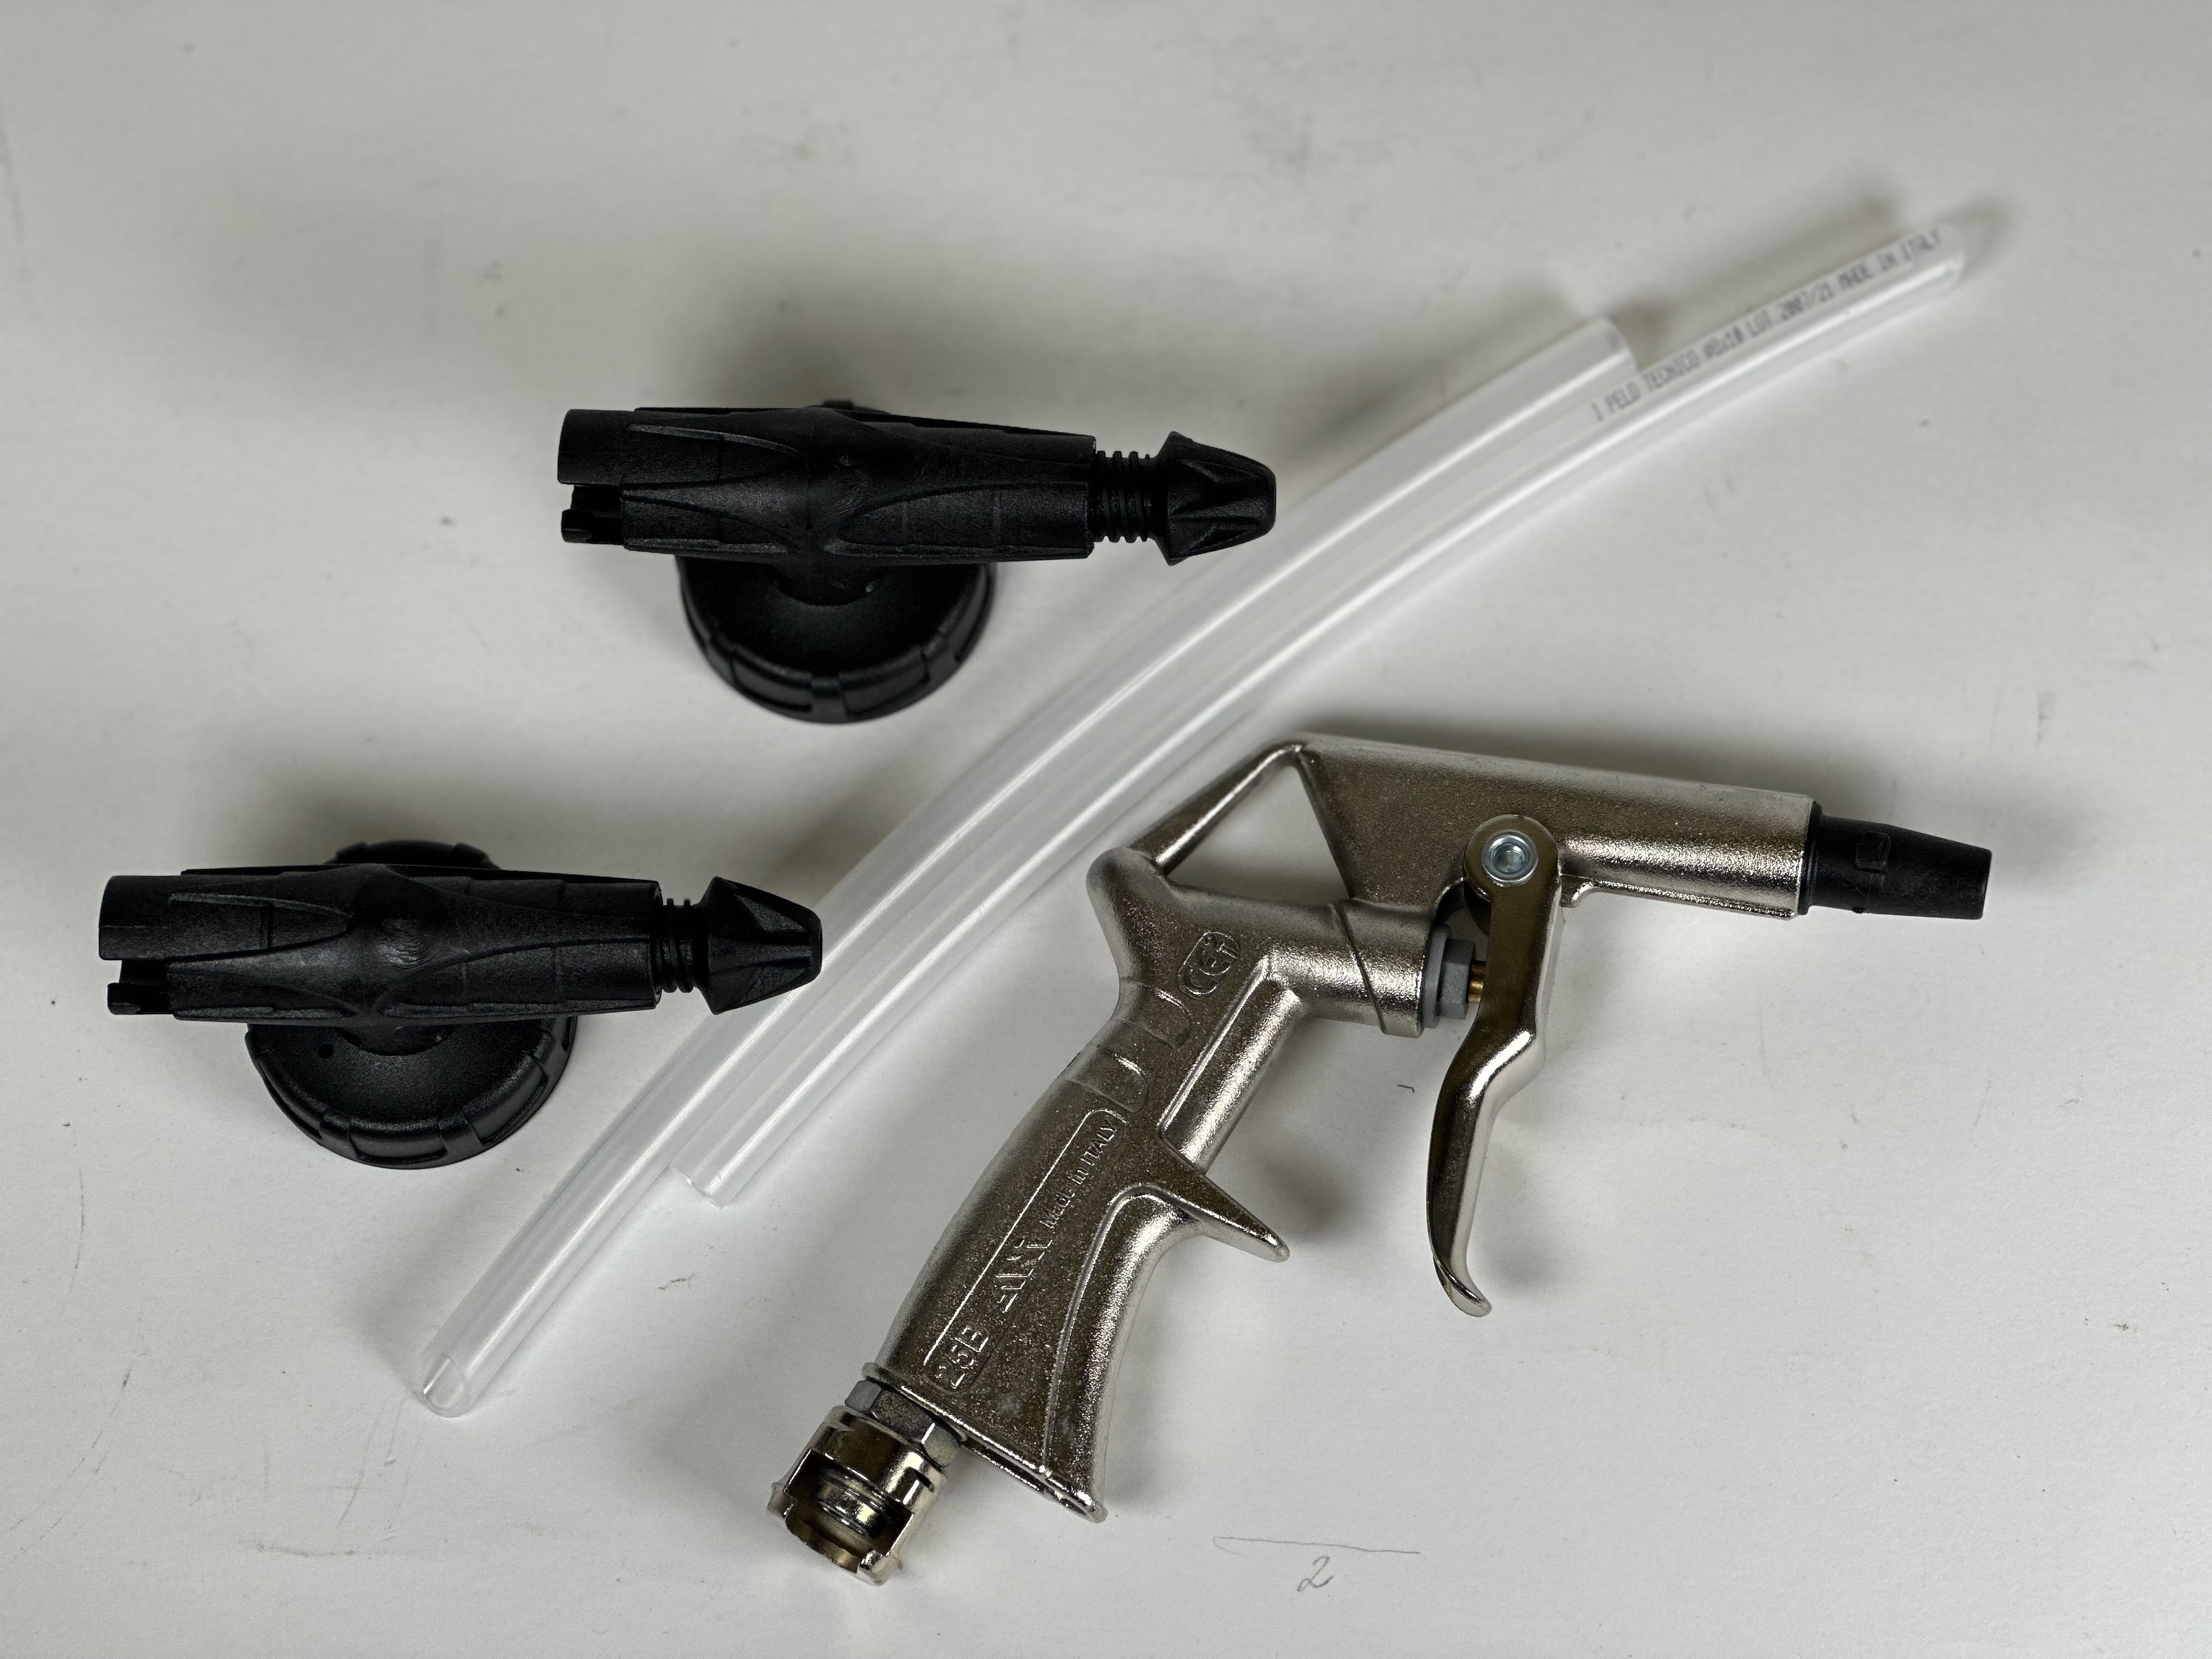 ANI Набор для нанесения защитных покрытий KIT/205-S. Пистолет, 2 крышки для евробаллонов, 2 трубки